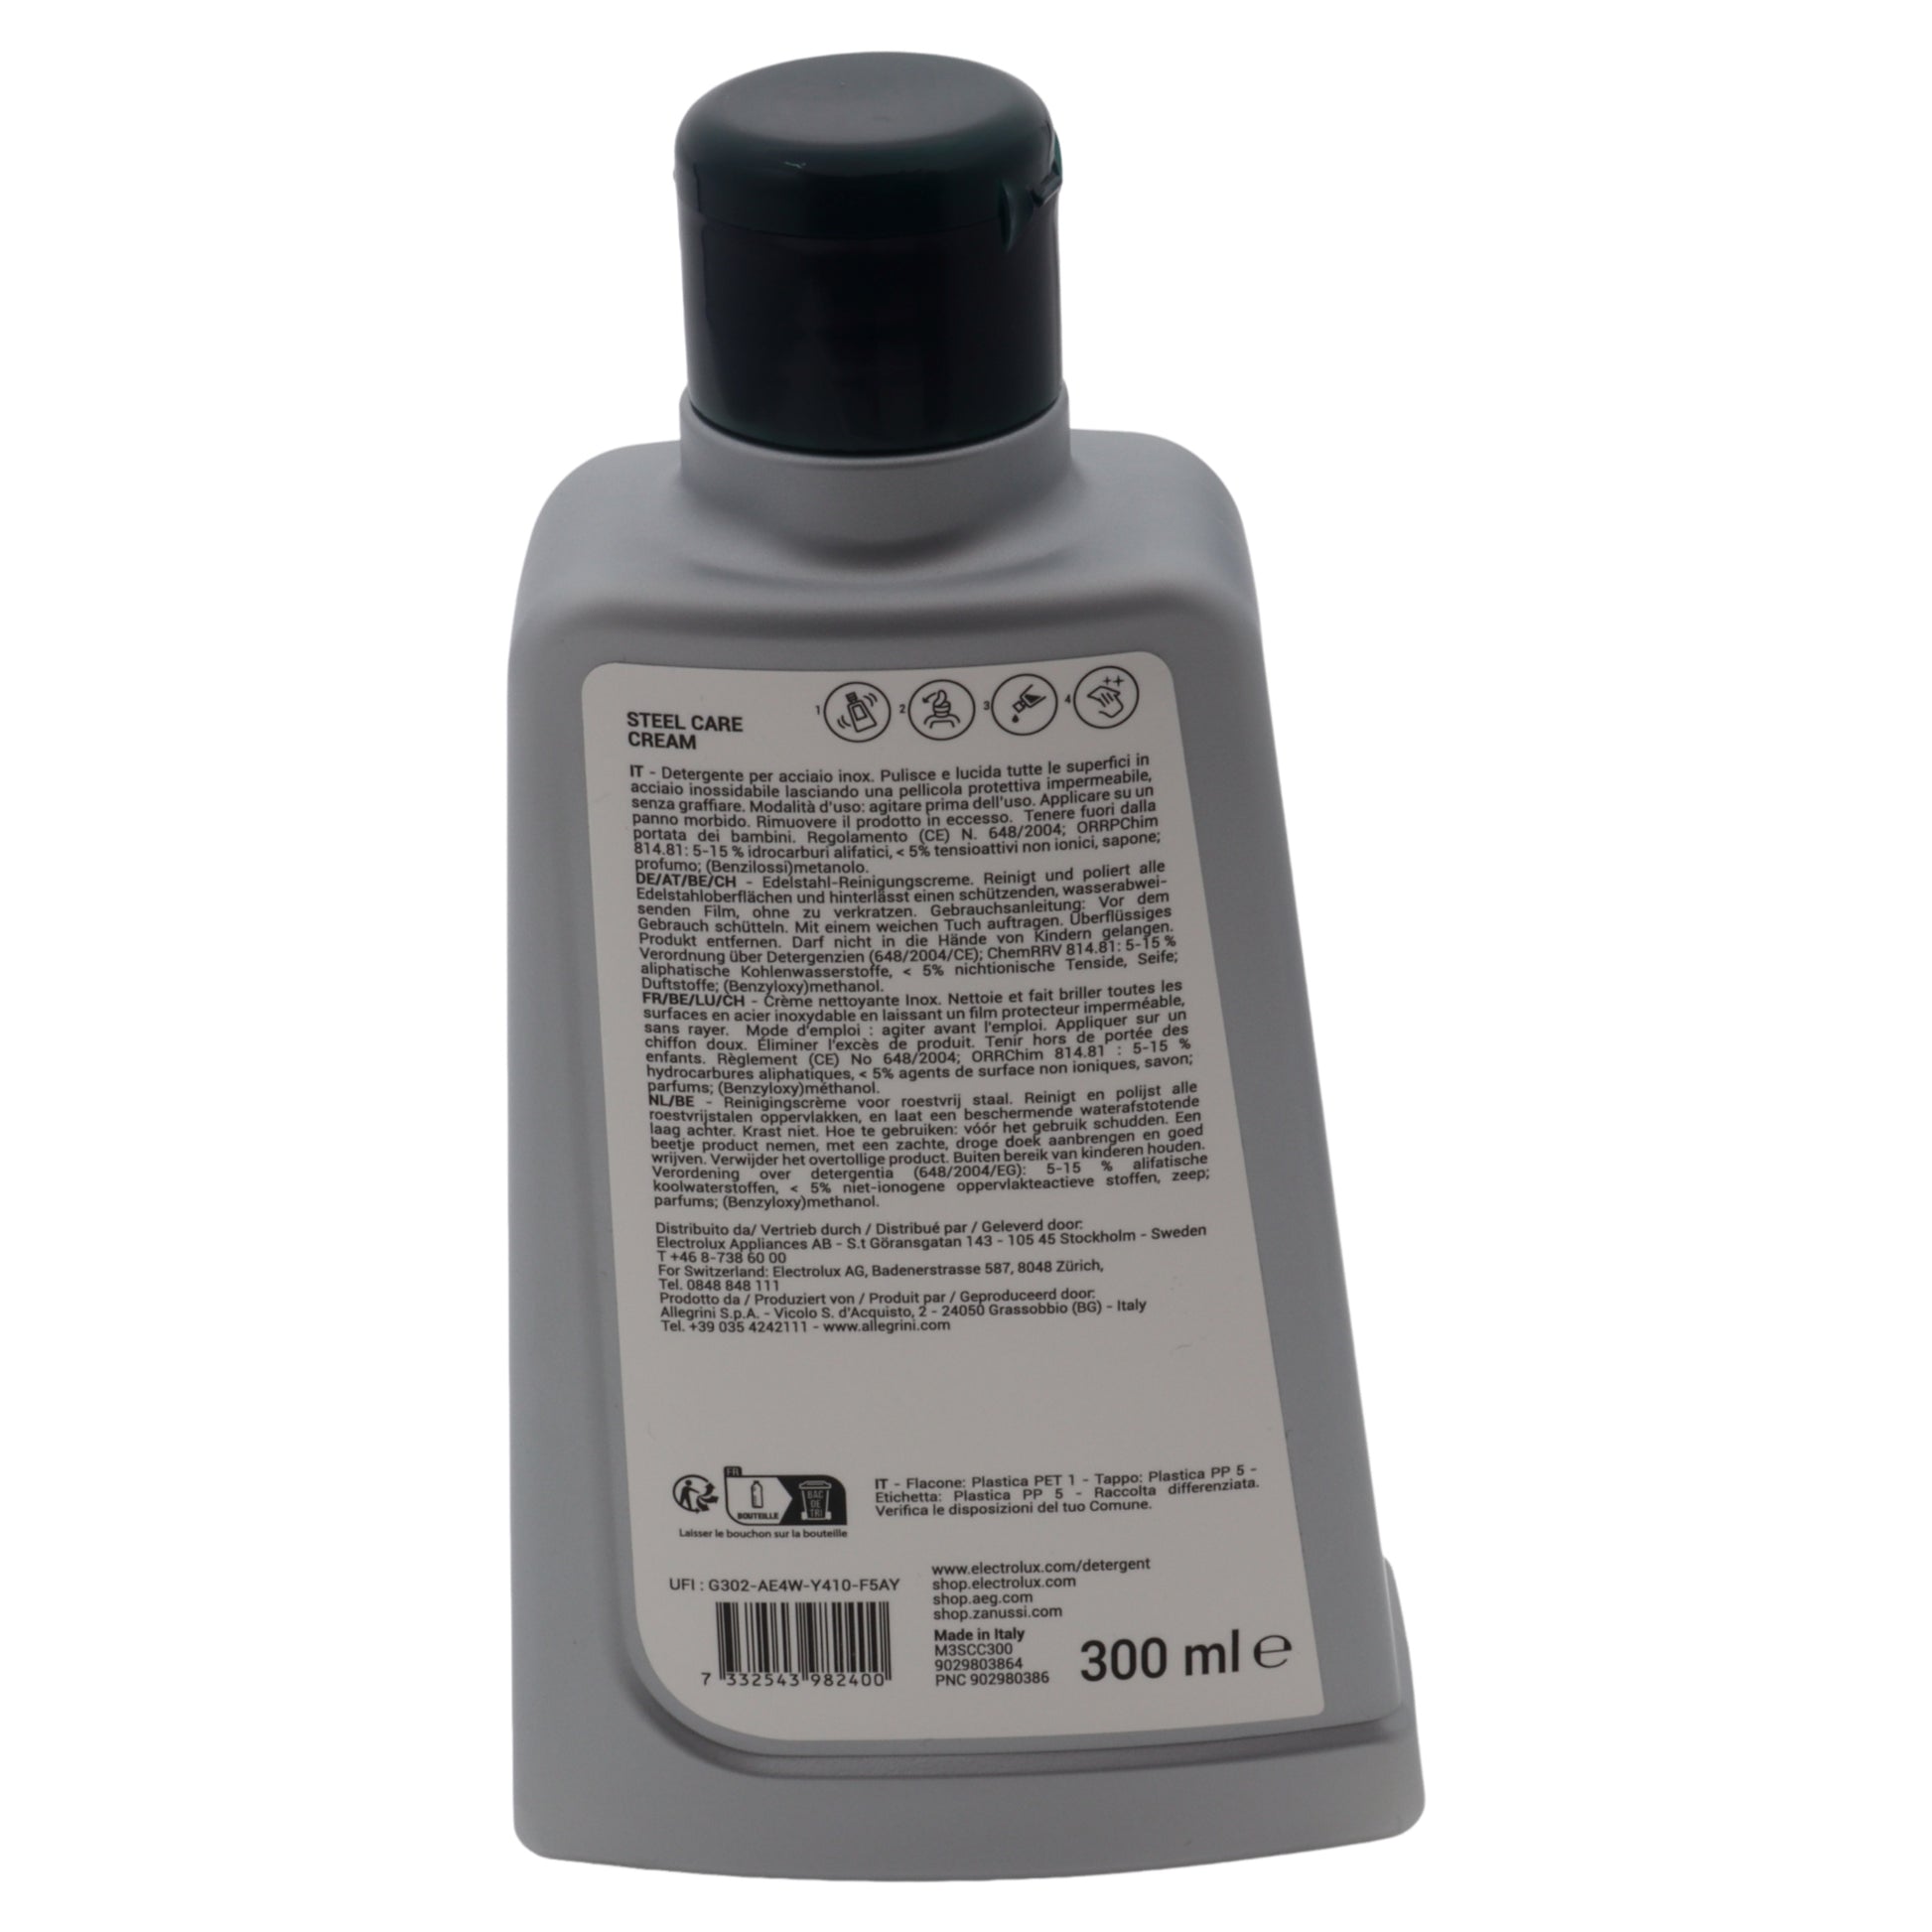 Electrolux detergente crema Steel Care acciaio inox pellicola protettiva lucida